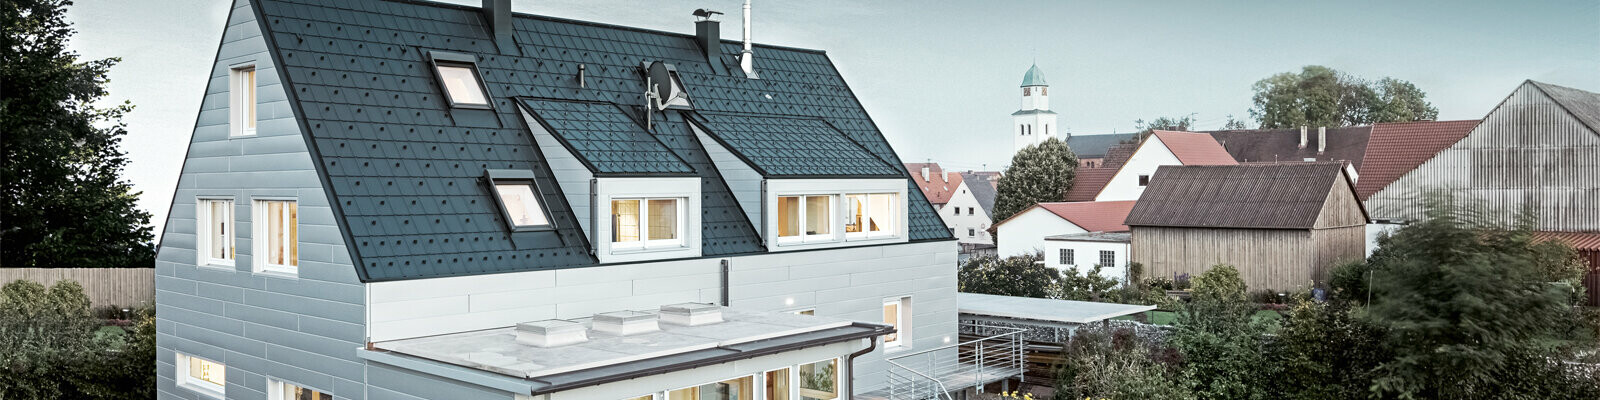 Einfamilienhaus mit dem hochwertigen PREFA Komplettsystem für Fassade, Dach, Hochwasserschutz, Dachentwässerung und PV-Montage